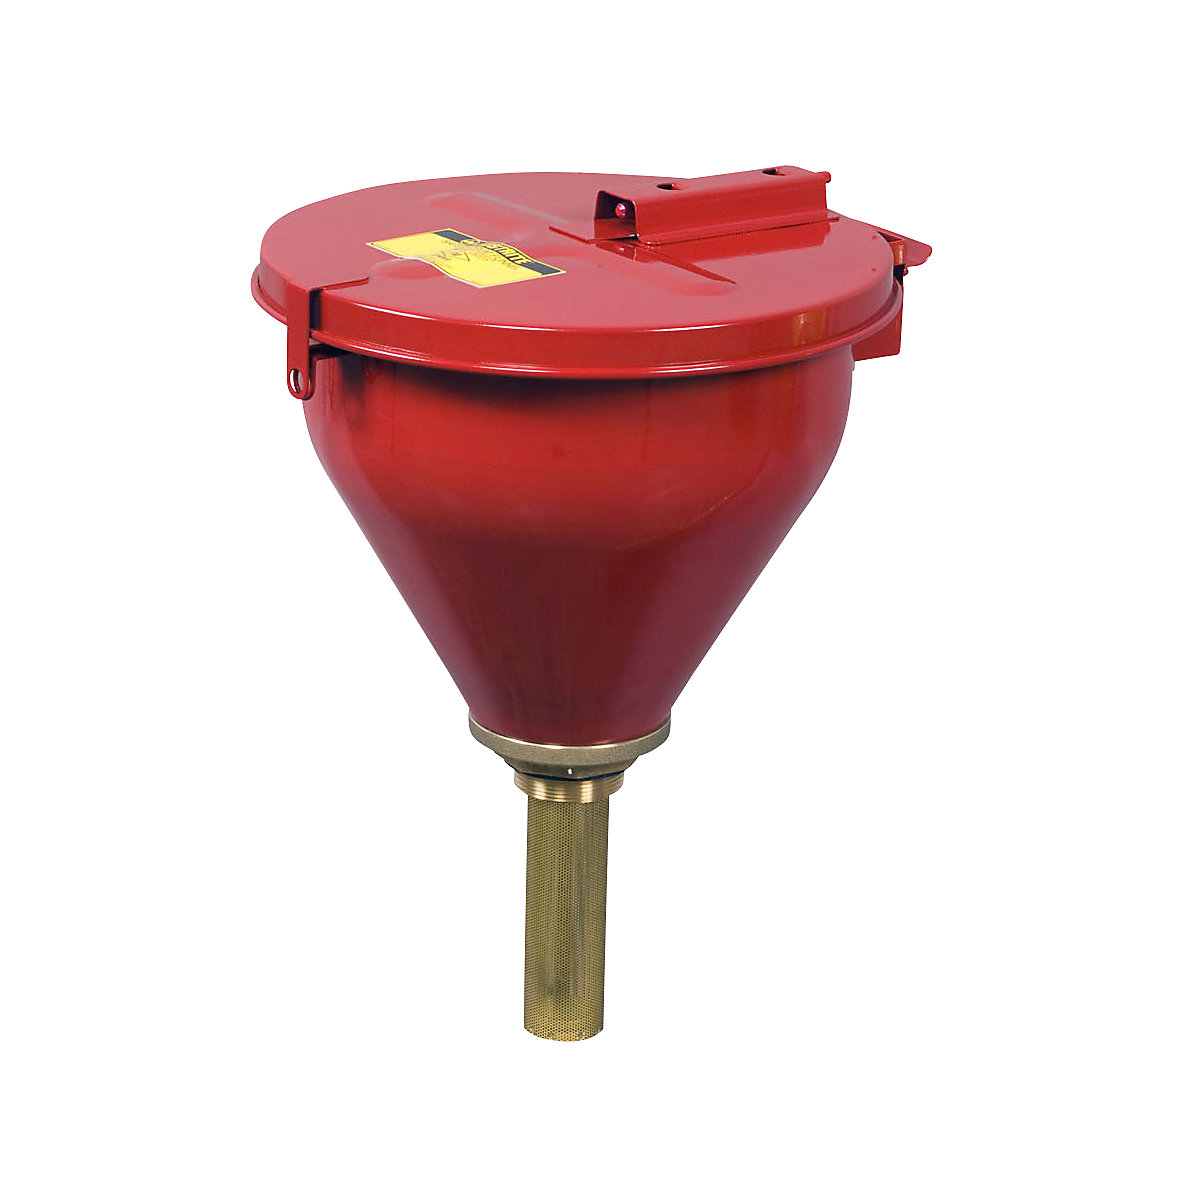 Safety drum funnel – Justrite